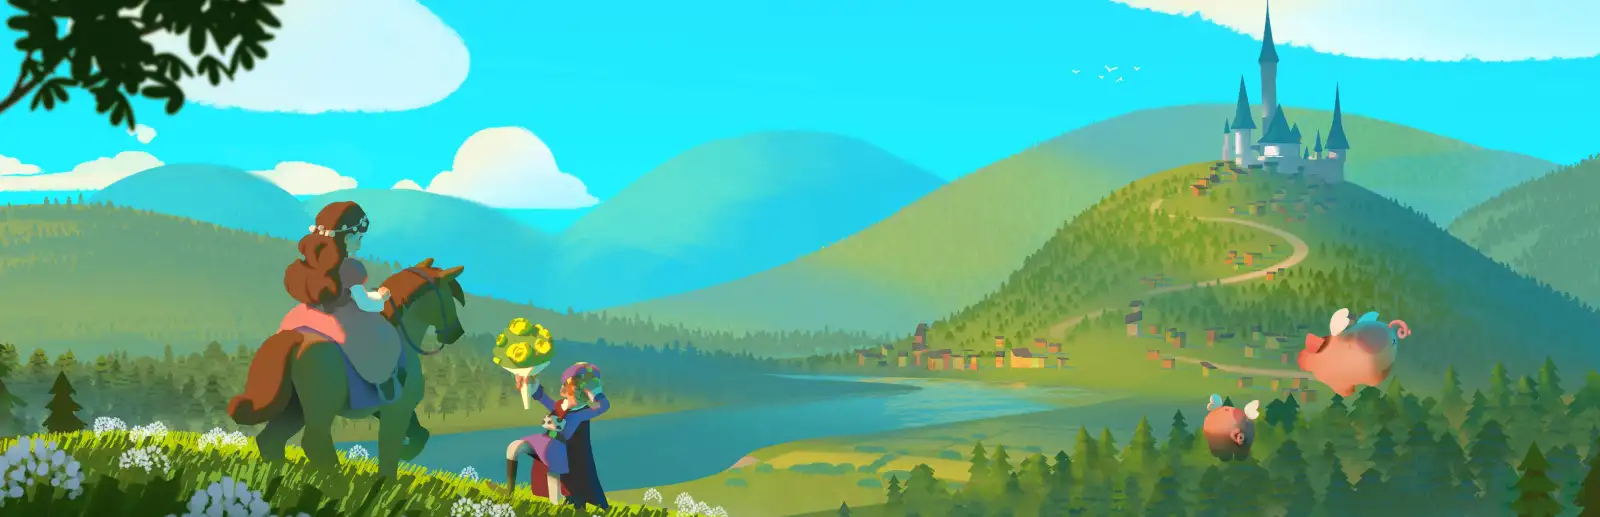 童话风城镇建造游戏《寓言之地》开发者自我介绍与开发日志更新